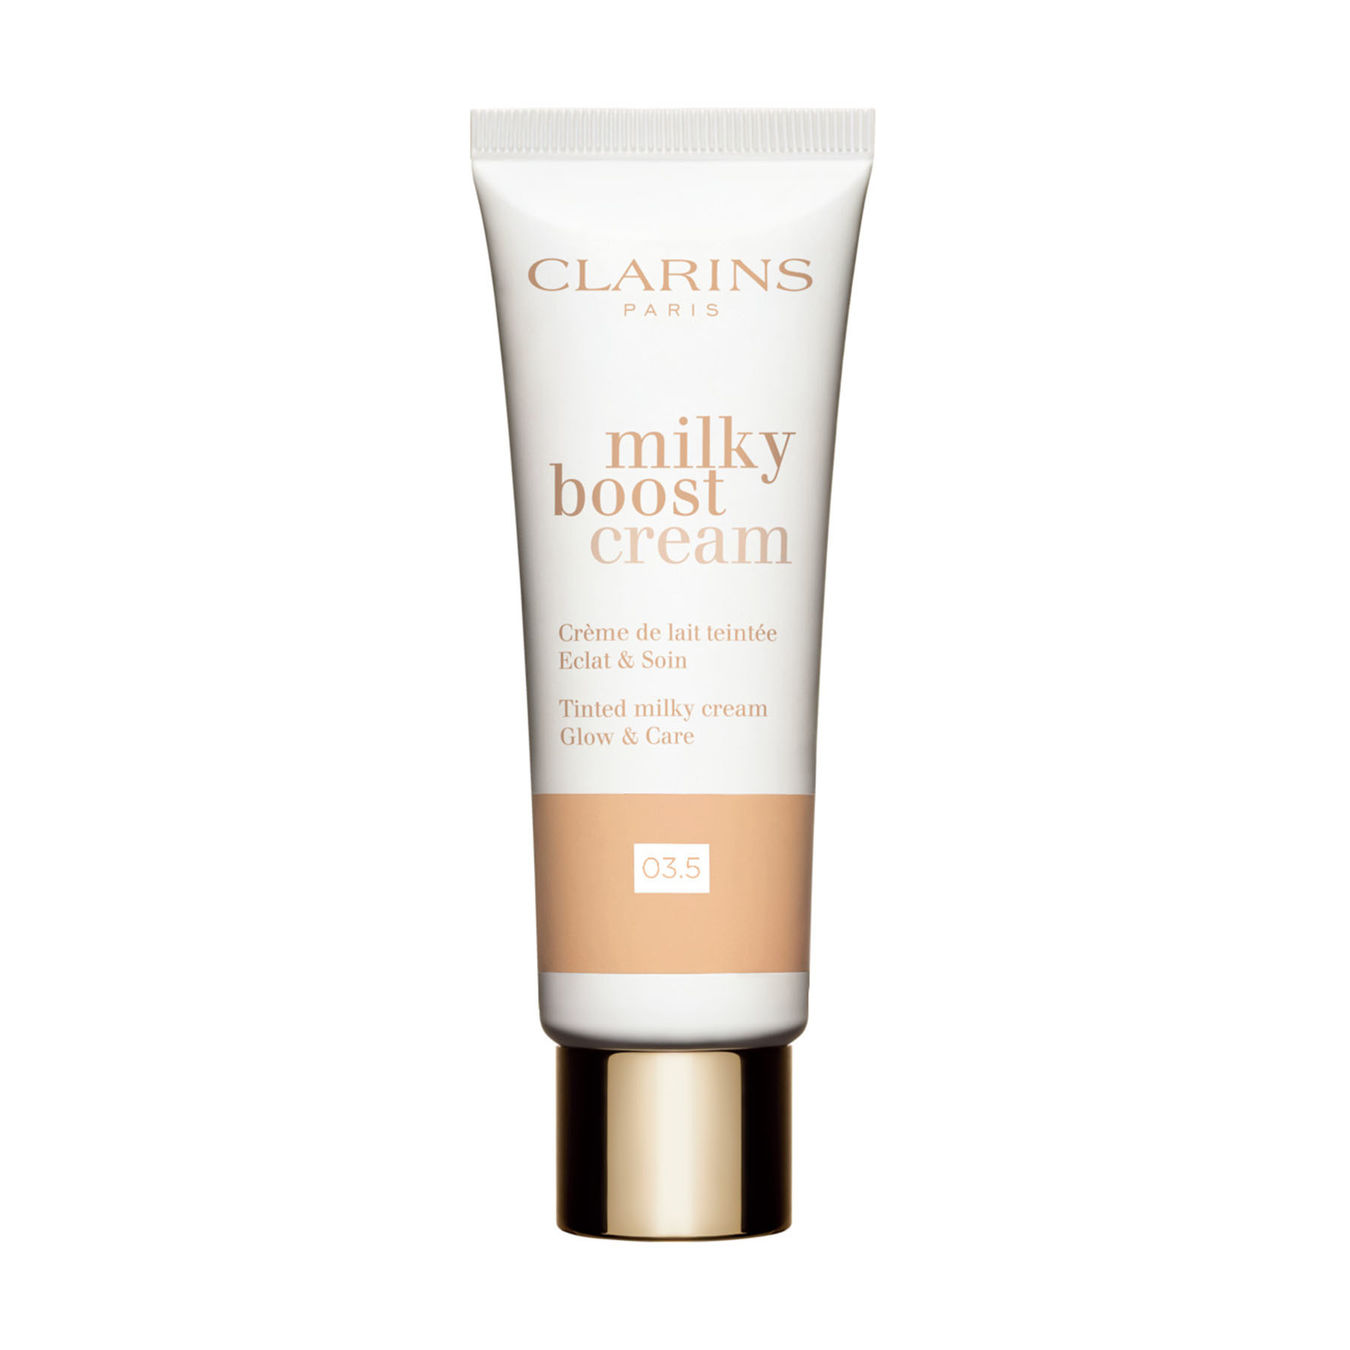 Clarins Milky Boost Cream Crème de lait teintée Eclat & Soin 45ml von Clarins